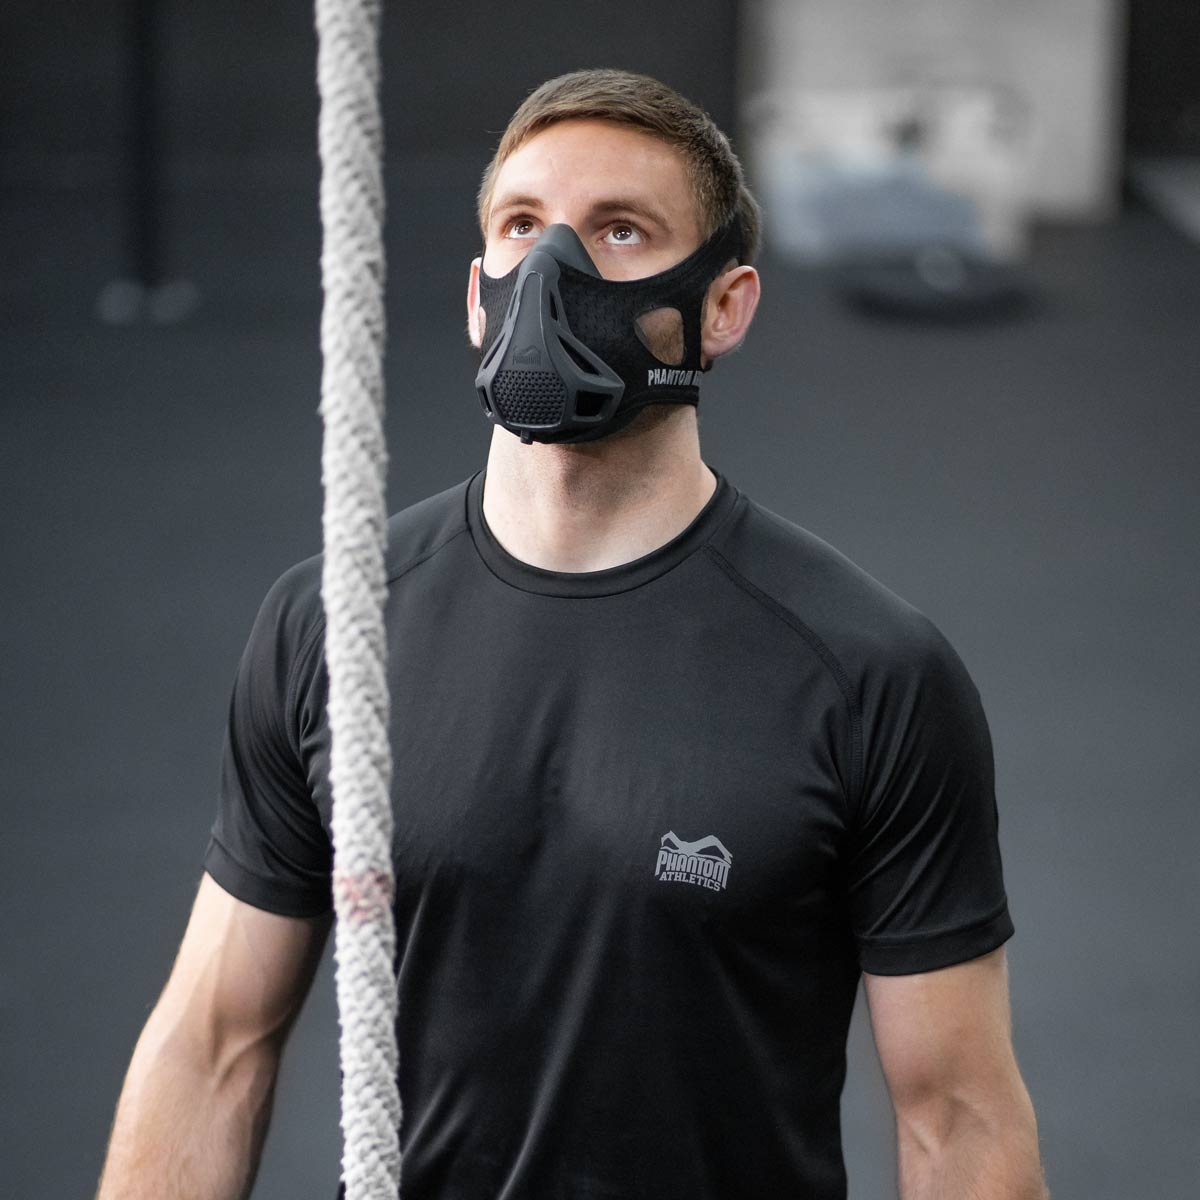 Crossfit Athlet Jakob Weber beim Training mit der Phantom Trainingsmaske. Sie trainiert seine Atemmuskulatur und sorgt so für eine bessere Ausdauer und Kondition im Sport.